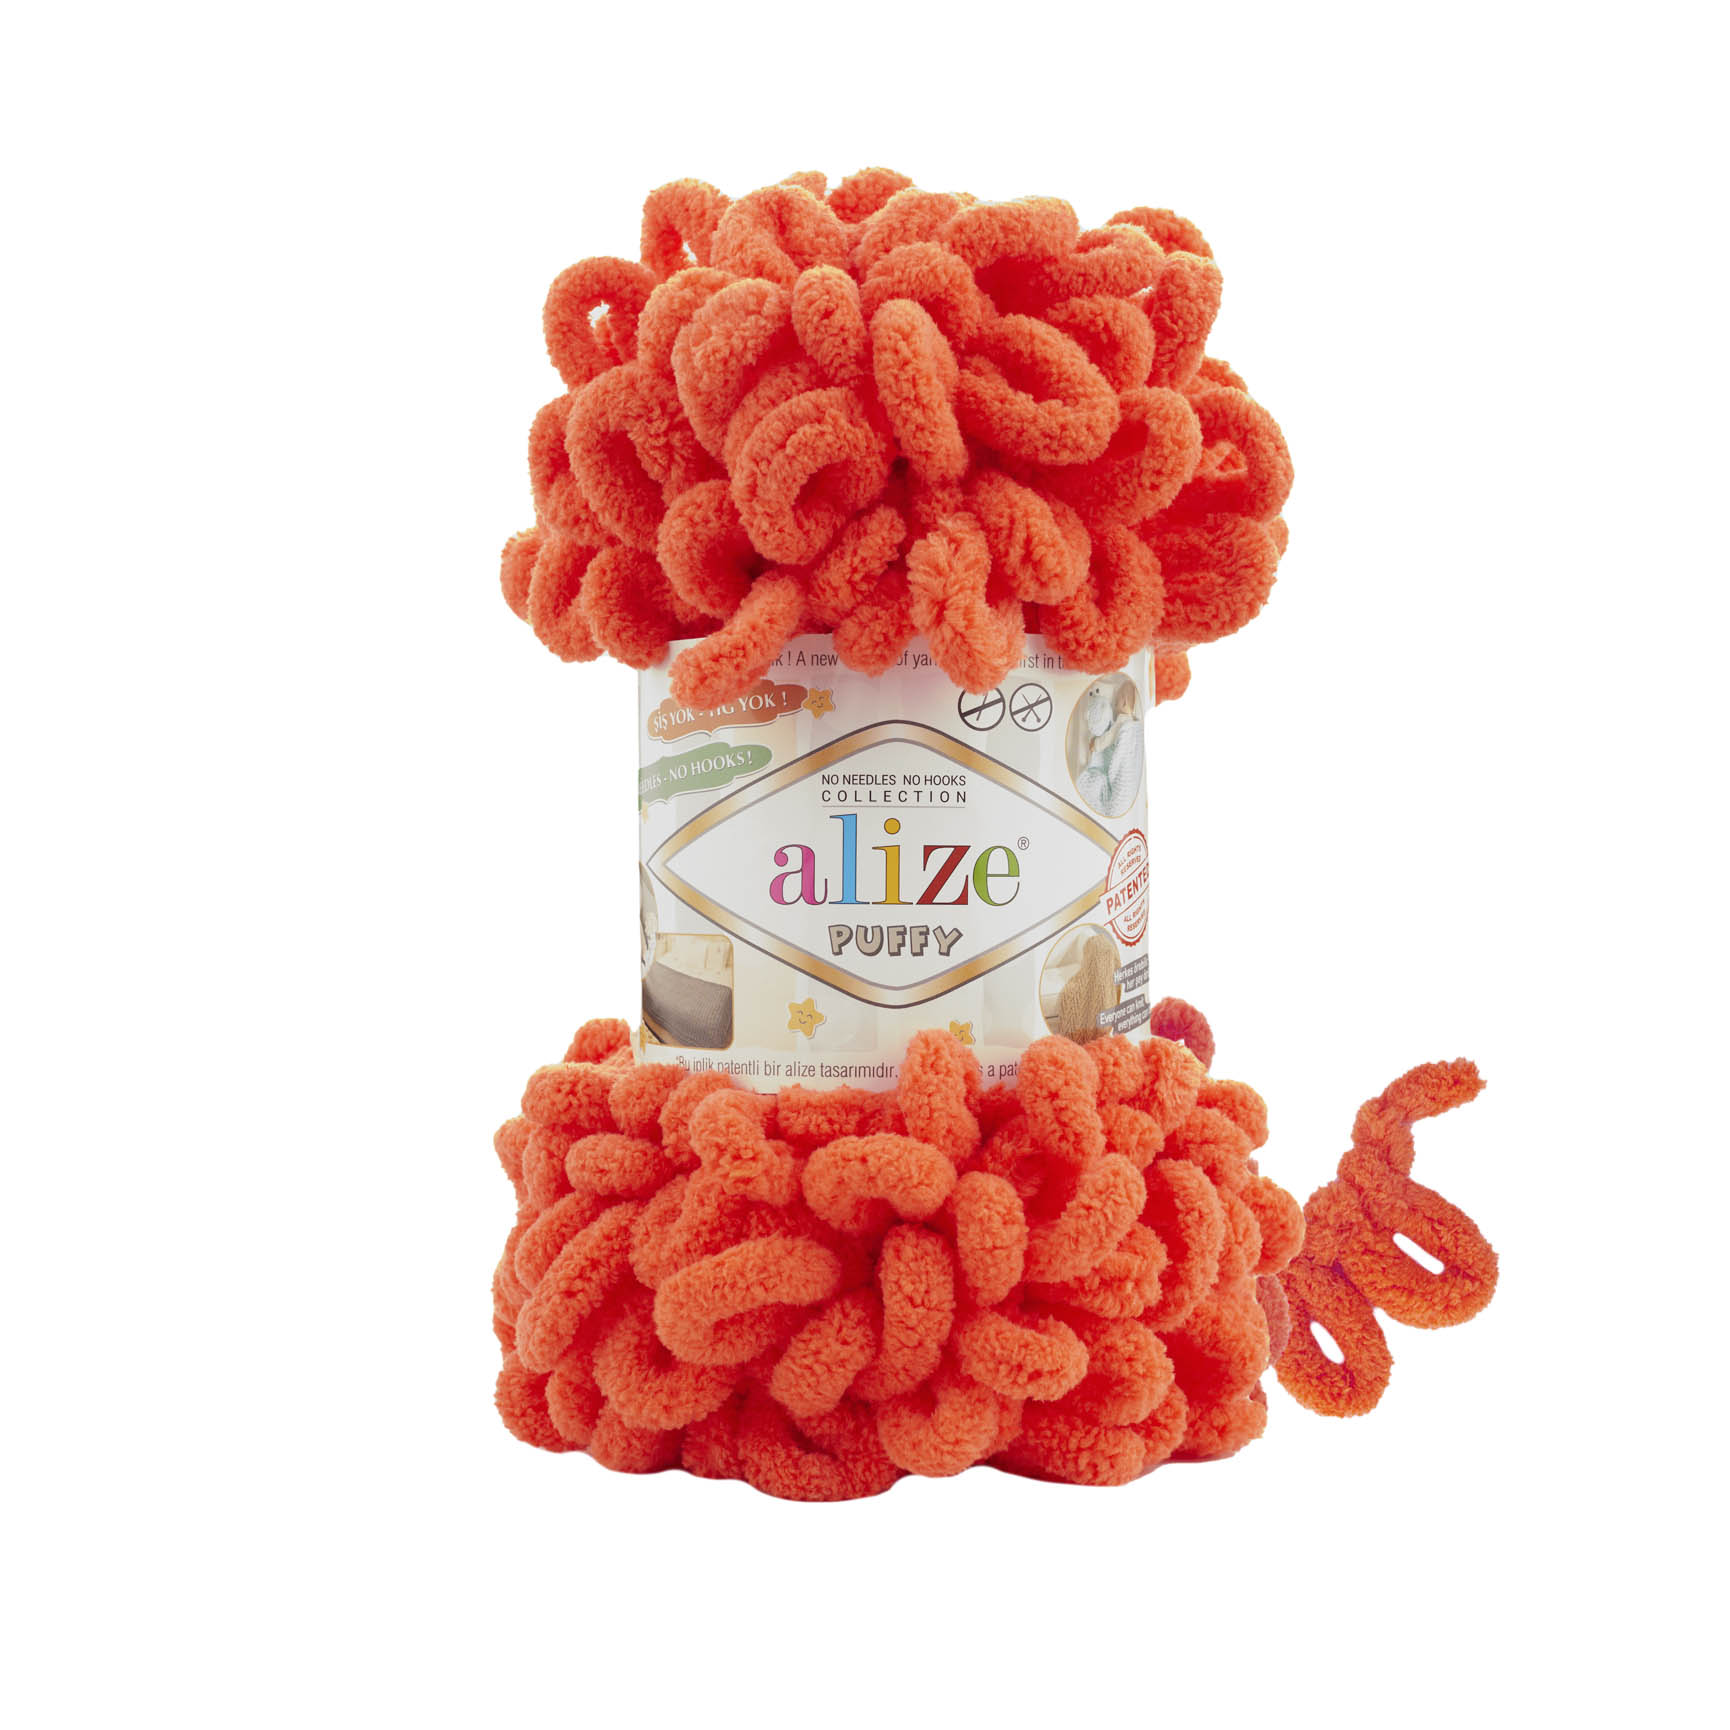 alize markasına ait 421 Nar Çiçeği kodlu puffy örgü ipi